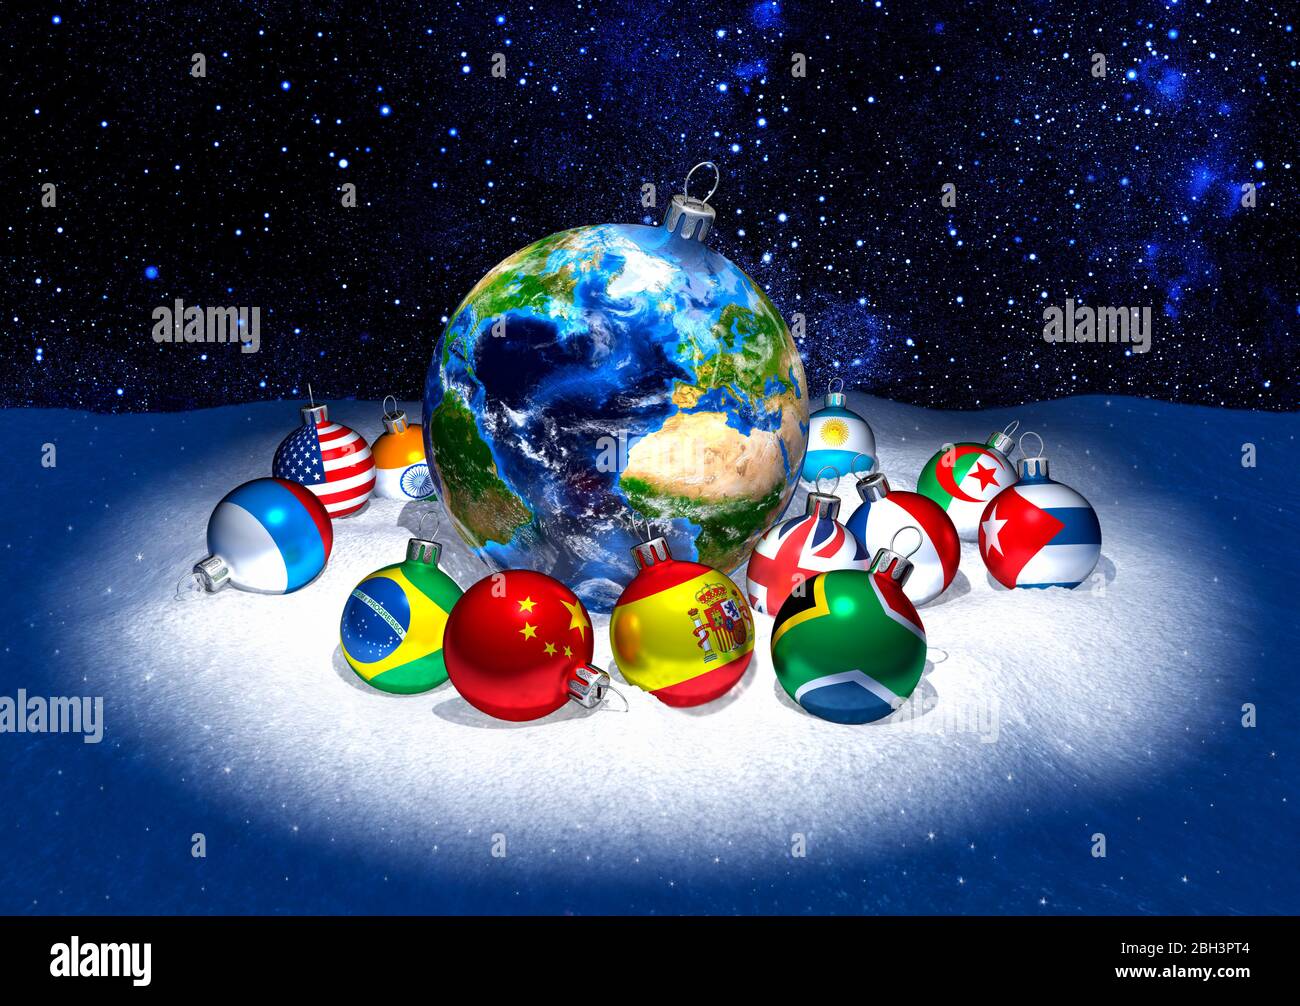 Weihnachtskugeln. Planet Erde von kleineren Dekorationen mit Fahnen umgeben, wenn die Welt. Schnee. Hintergrund mit Stern. Internationale Feier. Stockfoto